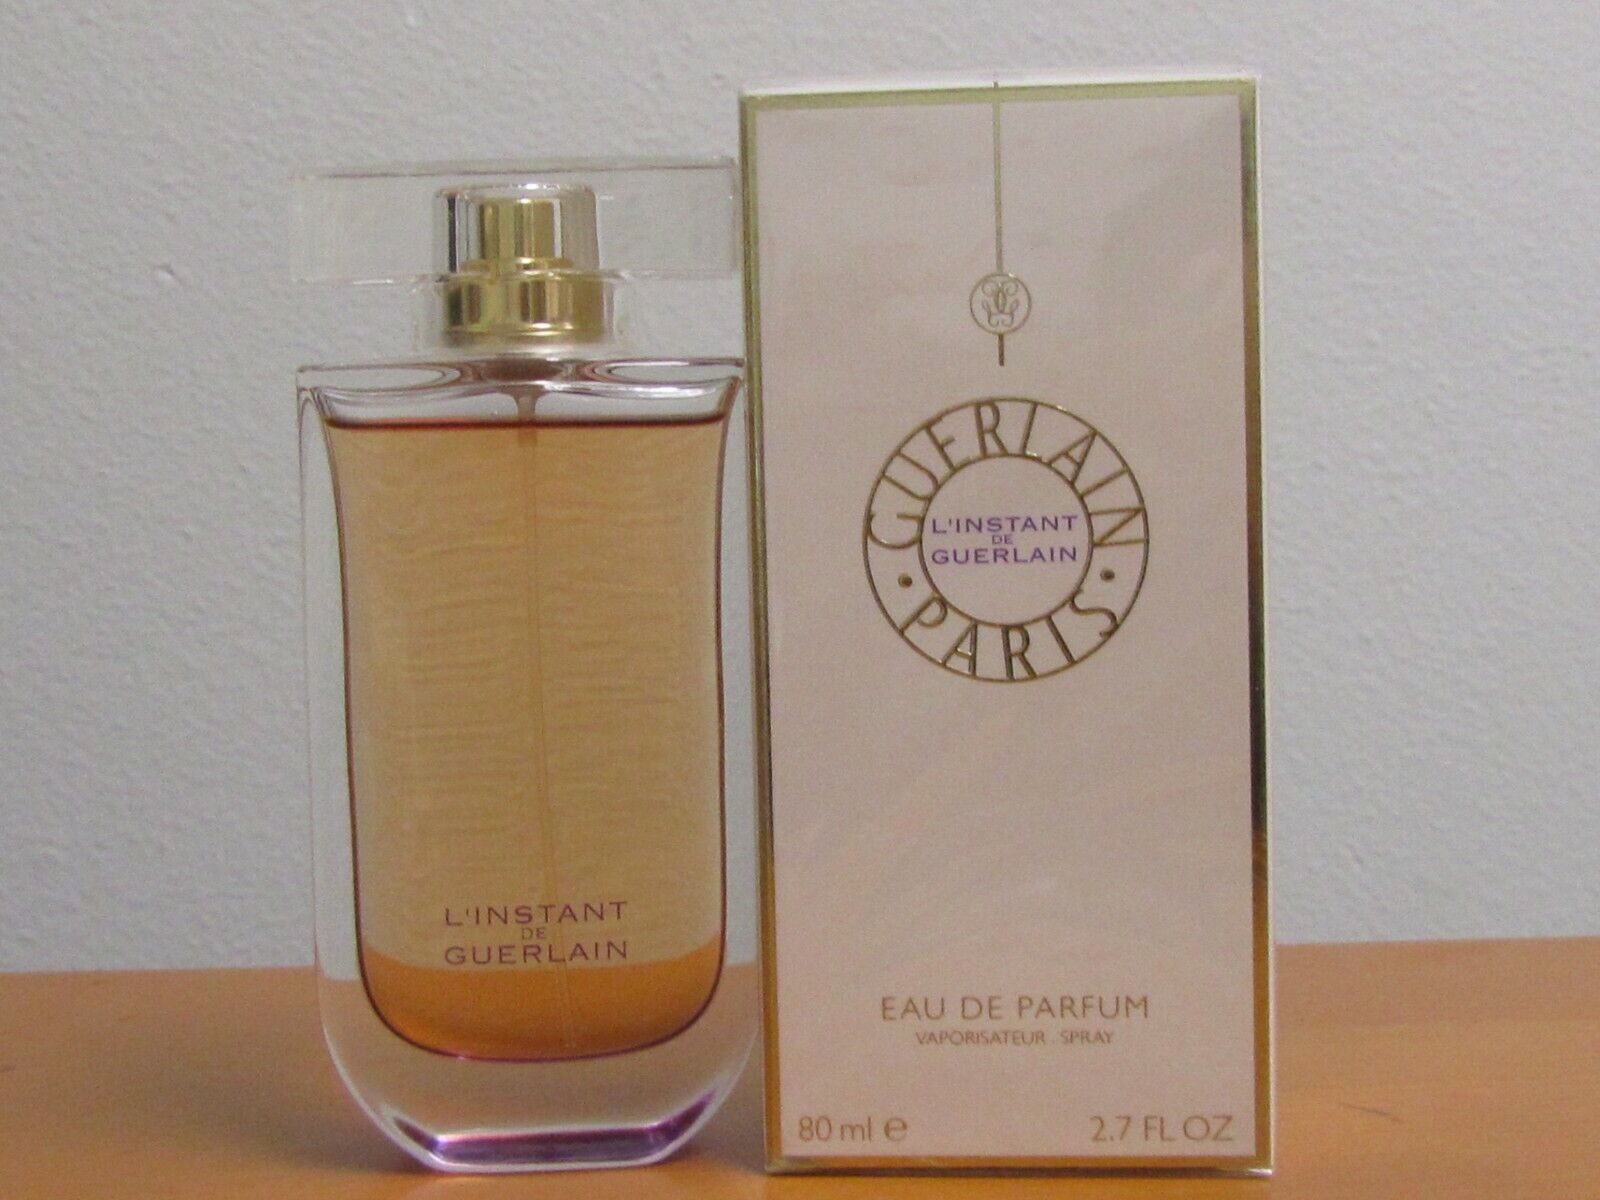 Guerlain L’instant 100ml Eau De Parfum Spray for Women at Ratans Online Shop - Perfumes Wholesale and Retailer Fragrance